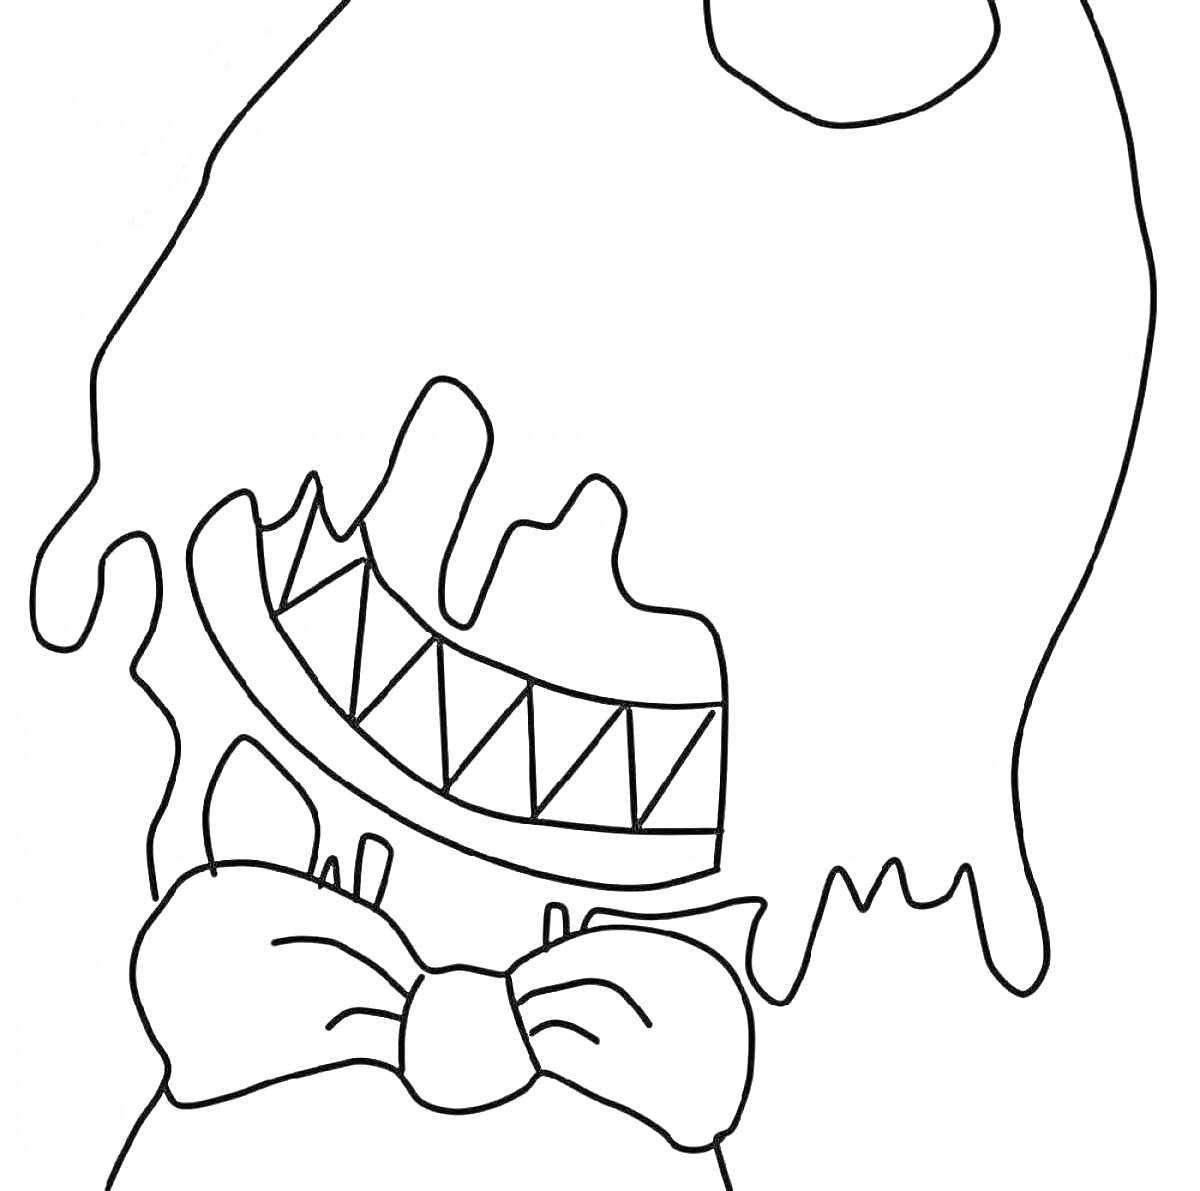 Раскраска Рисунок персонажа с вытянутым туловищем, улыбкой с острыми зубами, стеканием чернил и бантом на шее